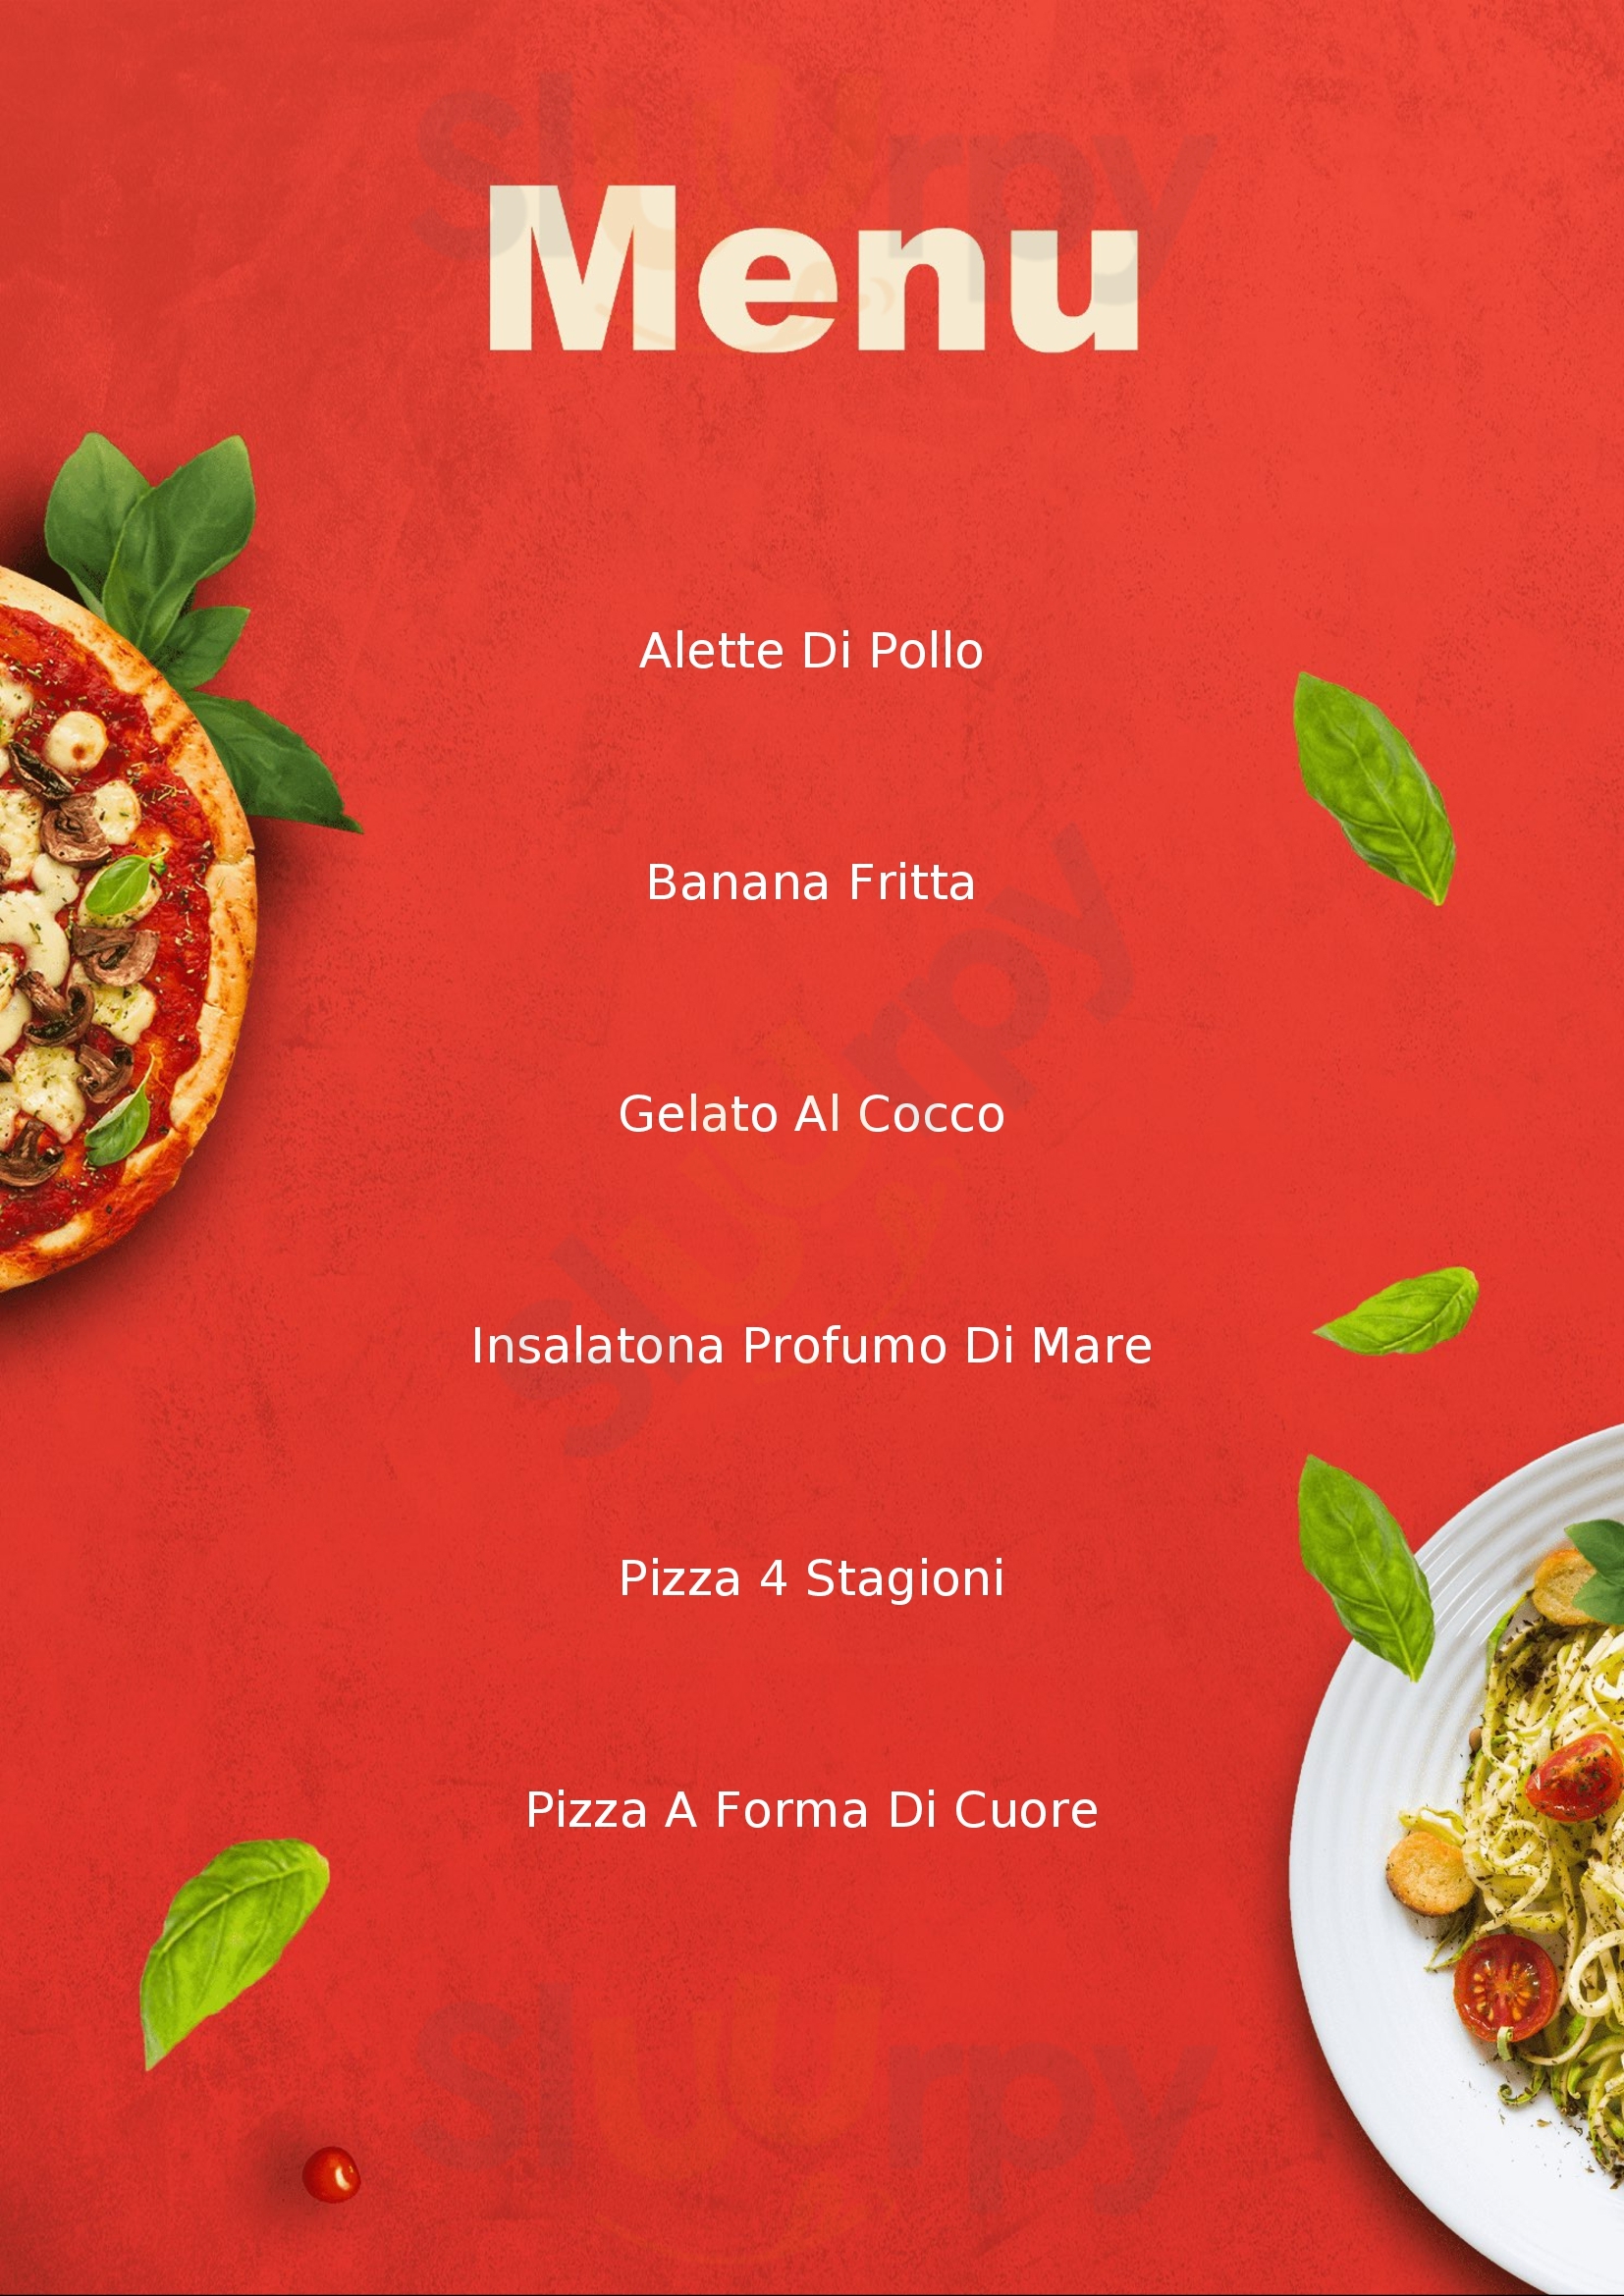 Ristorante Pizzeria Italo-Cinese di Zhu Maochao Settala menù 1 pagina